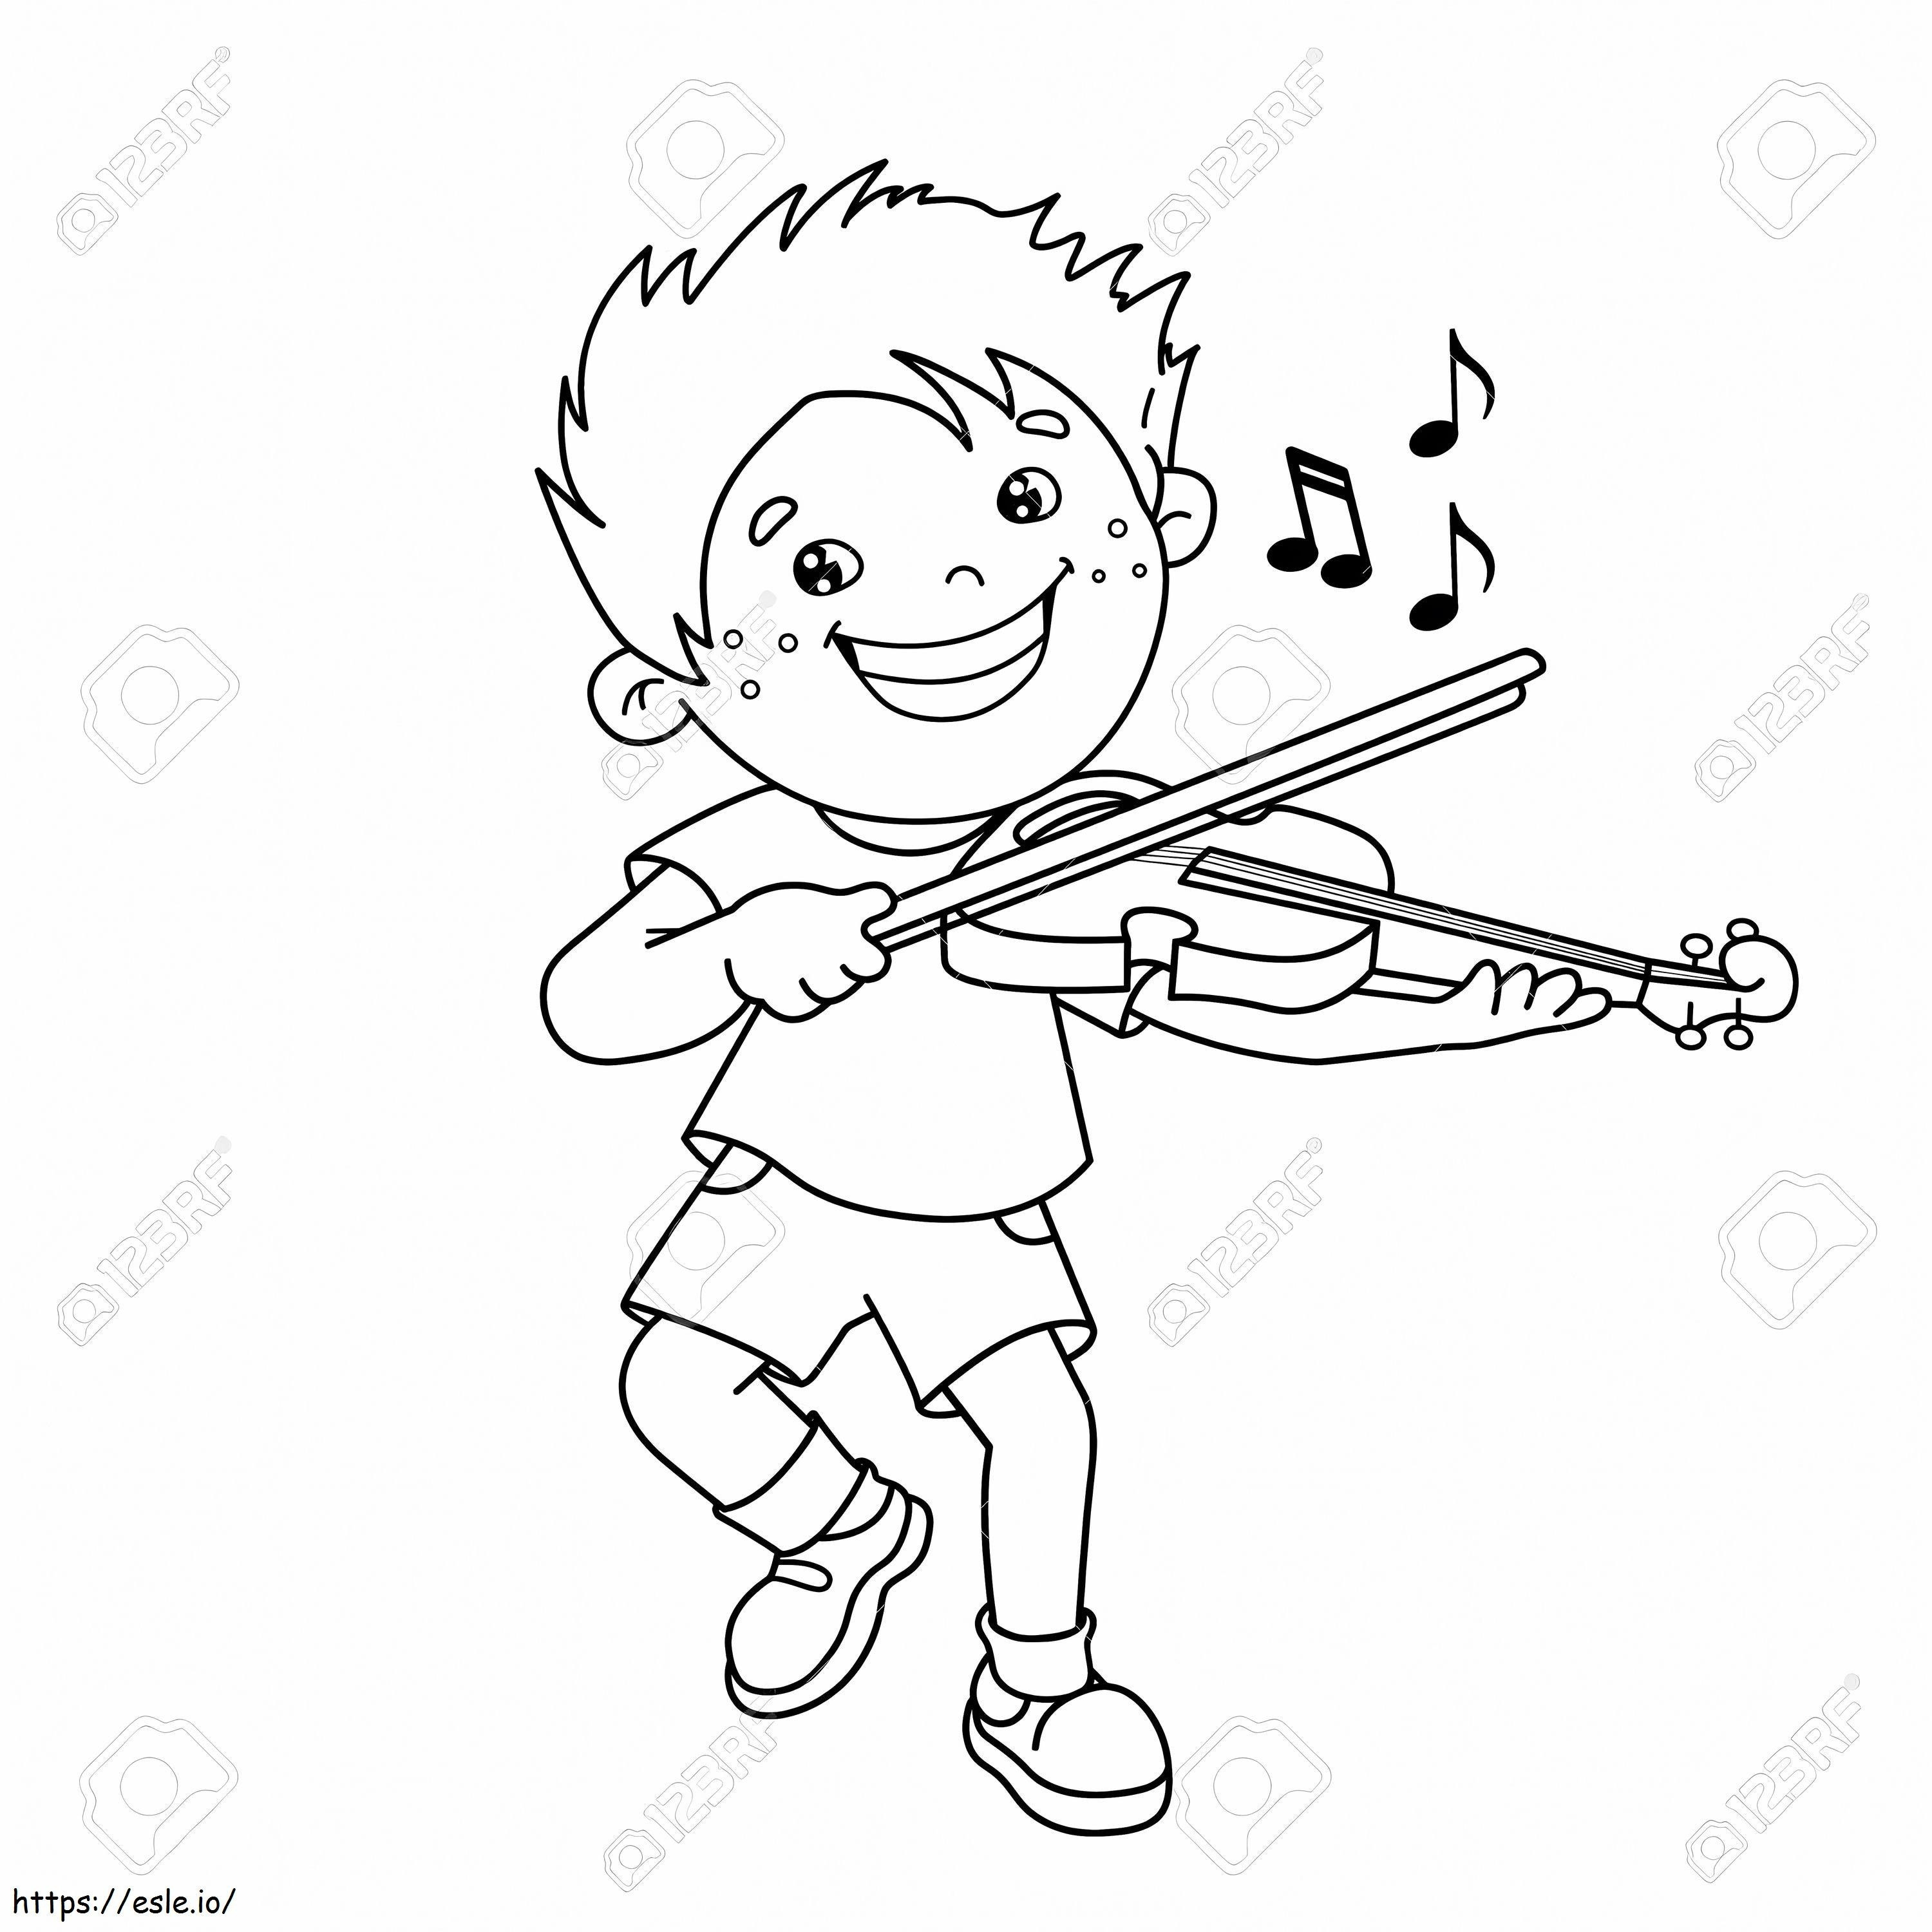 1543026113 75069501 Sarjakuvapojan ääriviivat viulua soittamassa soittimissa värityskirja värityskuva